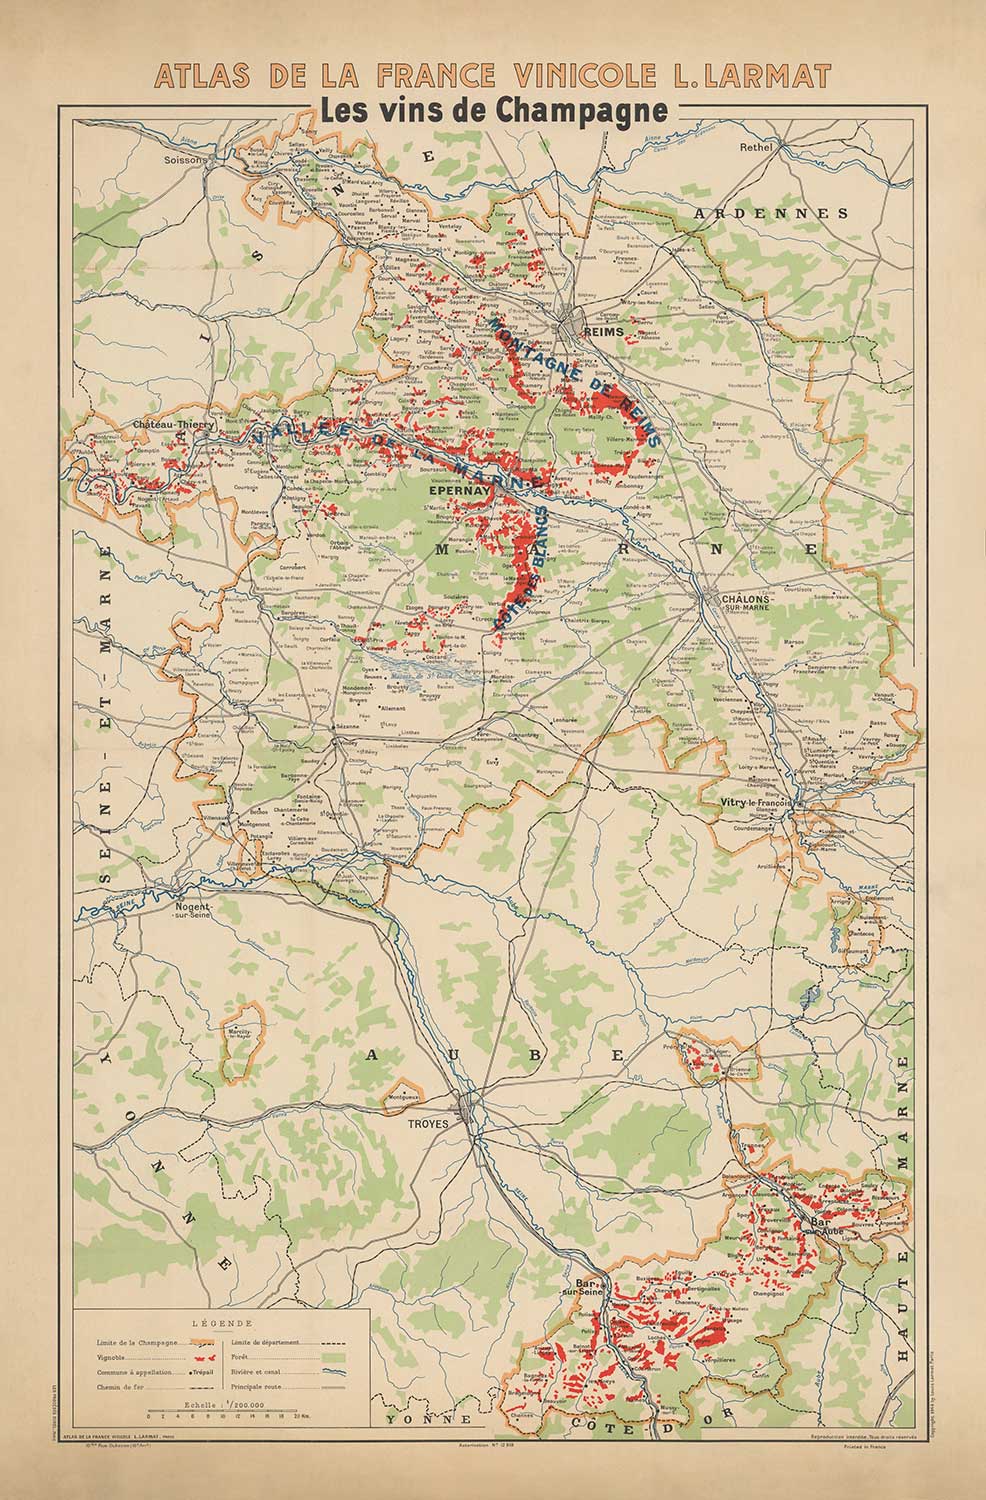 Alte Weinbergkarte der Champagne, Frankreich, 1944 von Louis Larmat - Reims, Epernay, Troyes, Chatau-Thierry, Bar-Sur-Seine